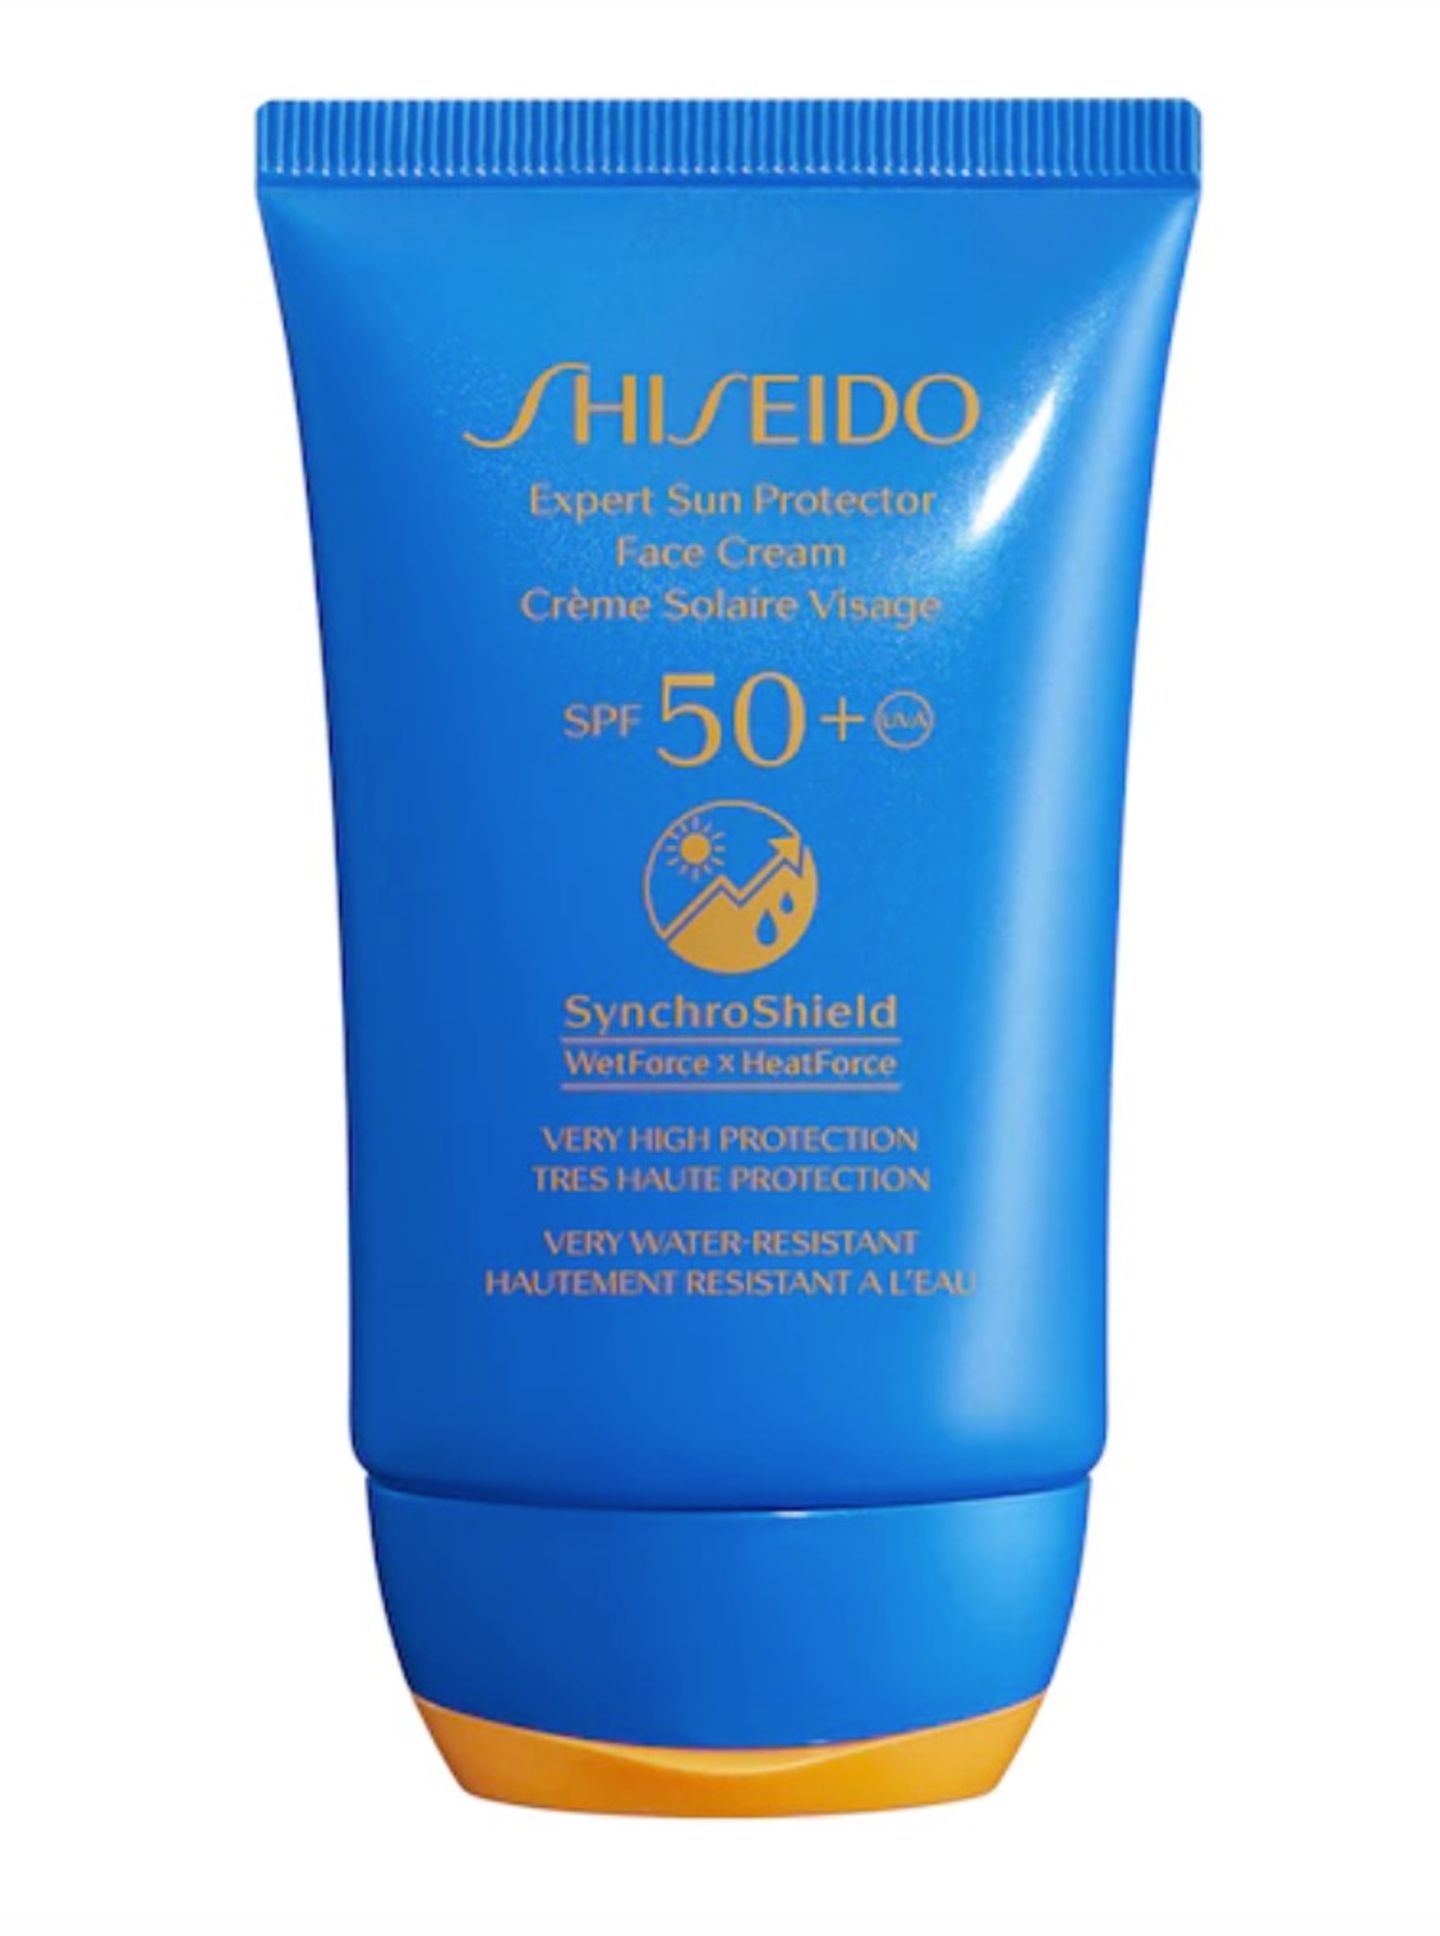 Expert Sun Protector für das Gesicht von Shiseido